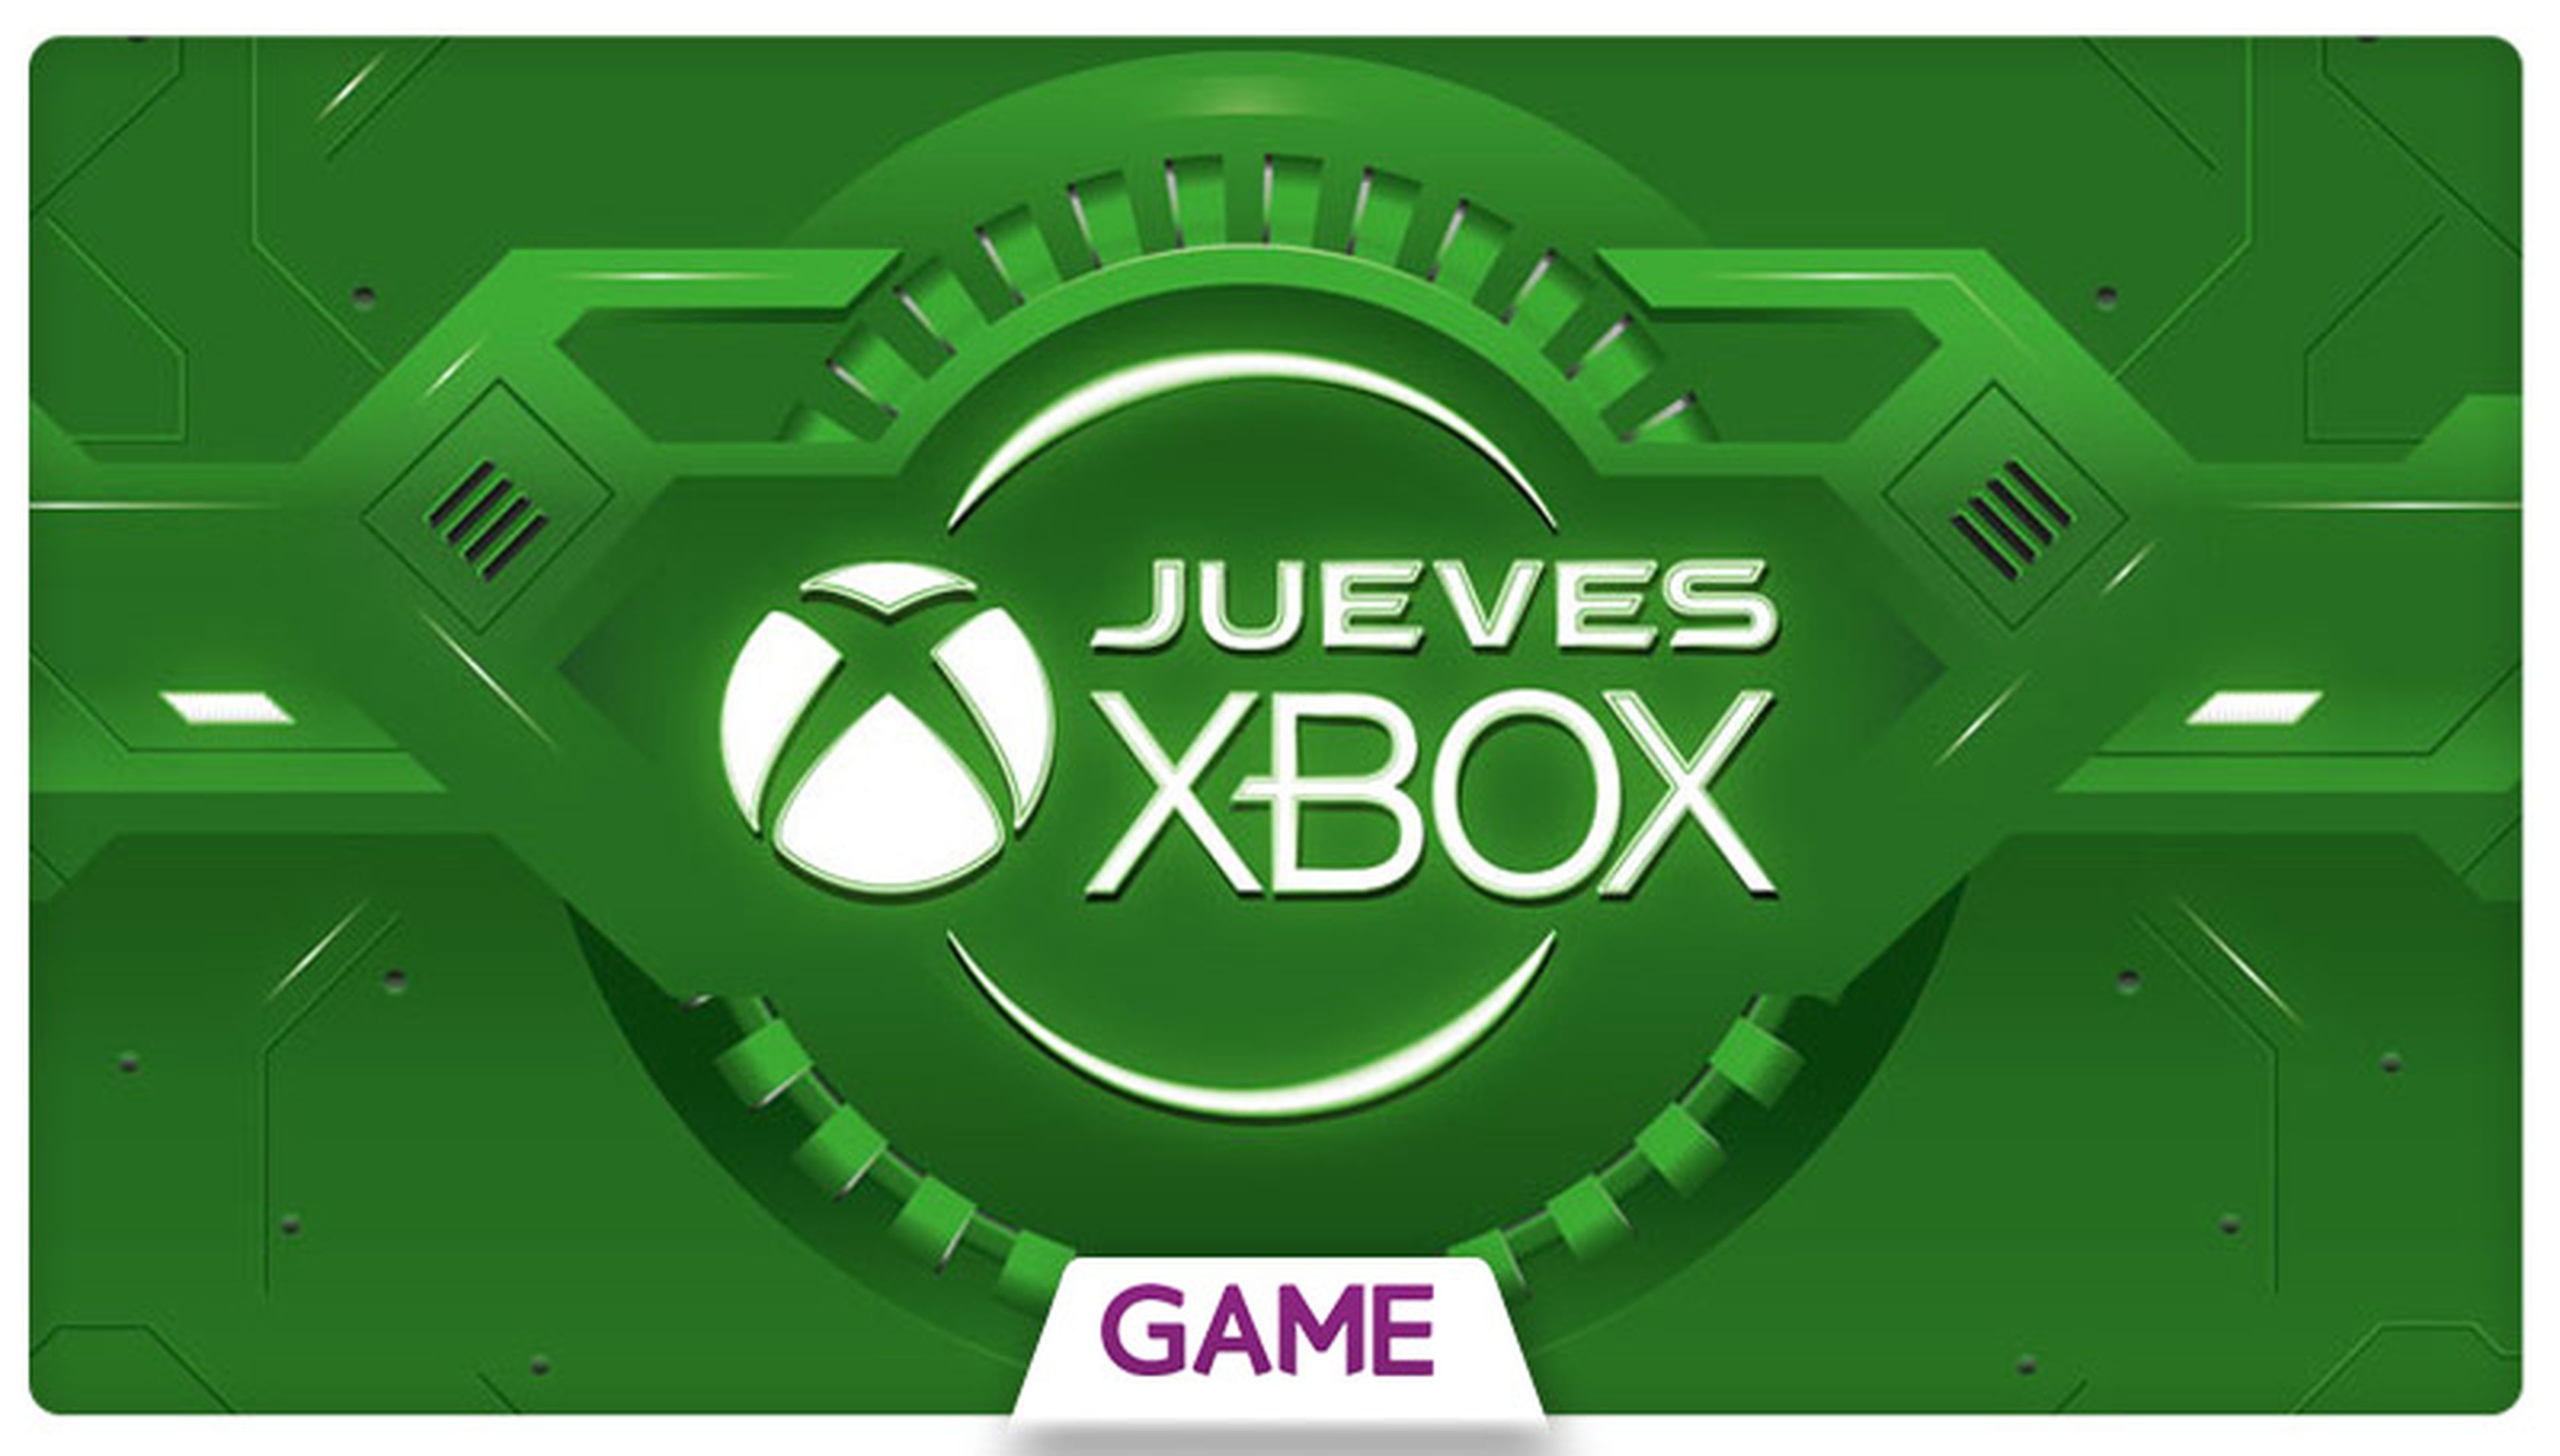 Jueves Xbox en GAME: Ofertas del 21/04/2016